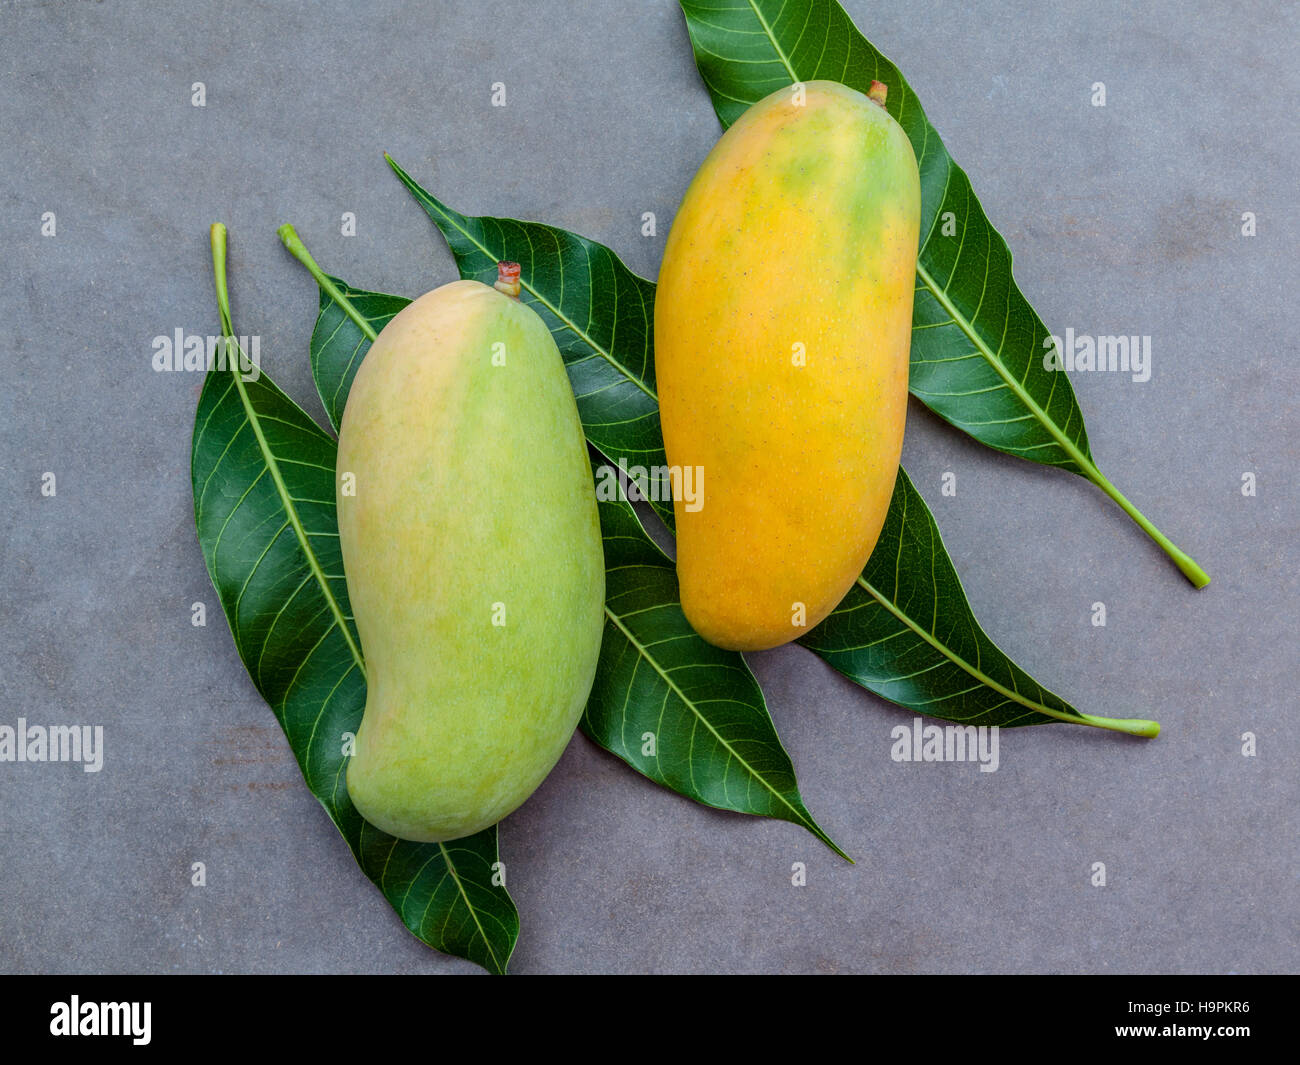 Fresche biologiche tailandese tradizionale manghi ricco di vitamine e di minerali Foto Stock